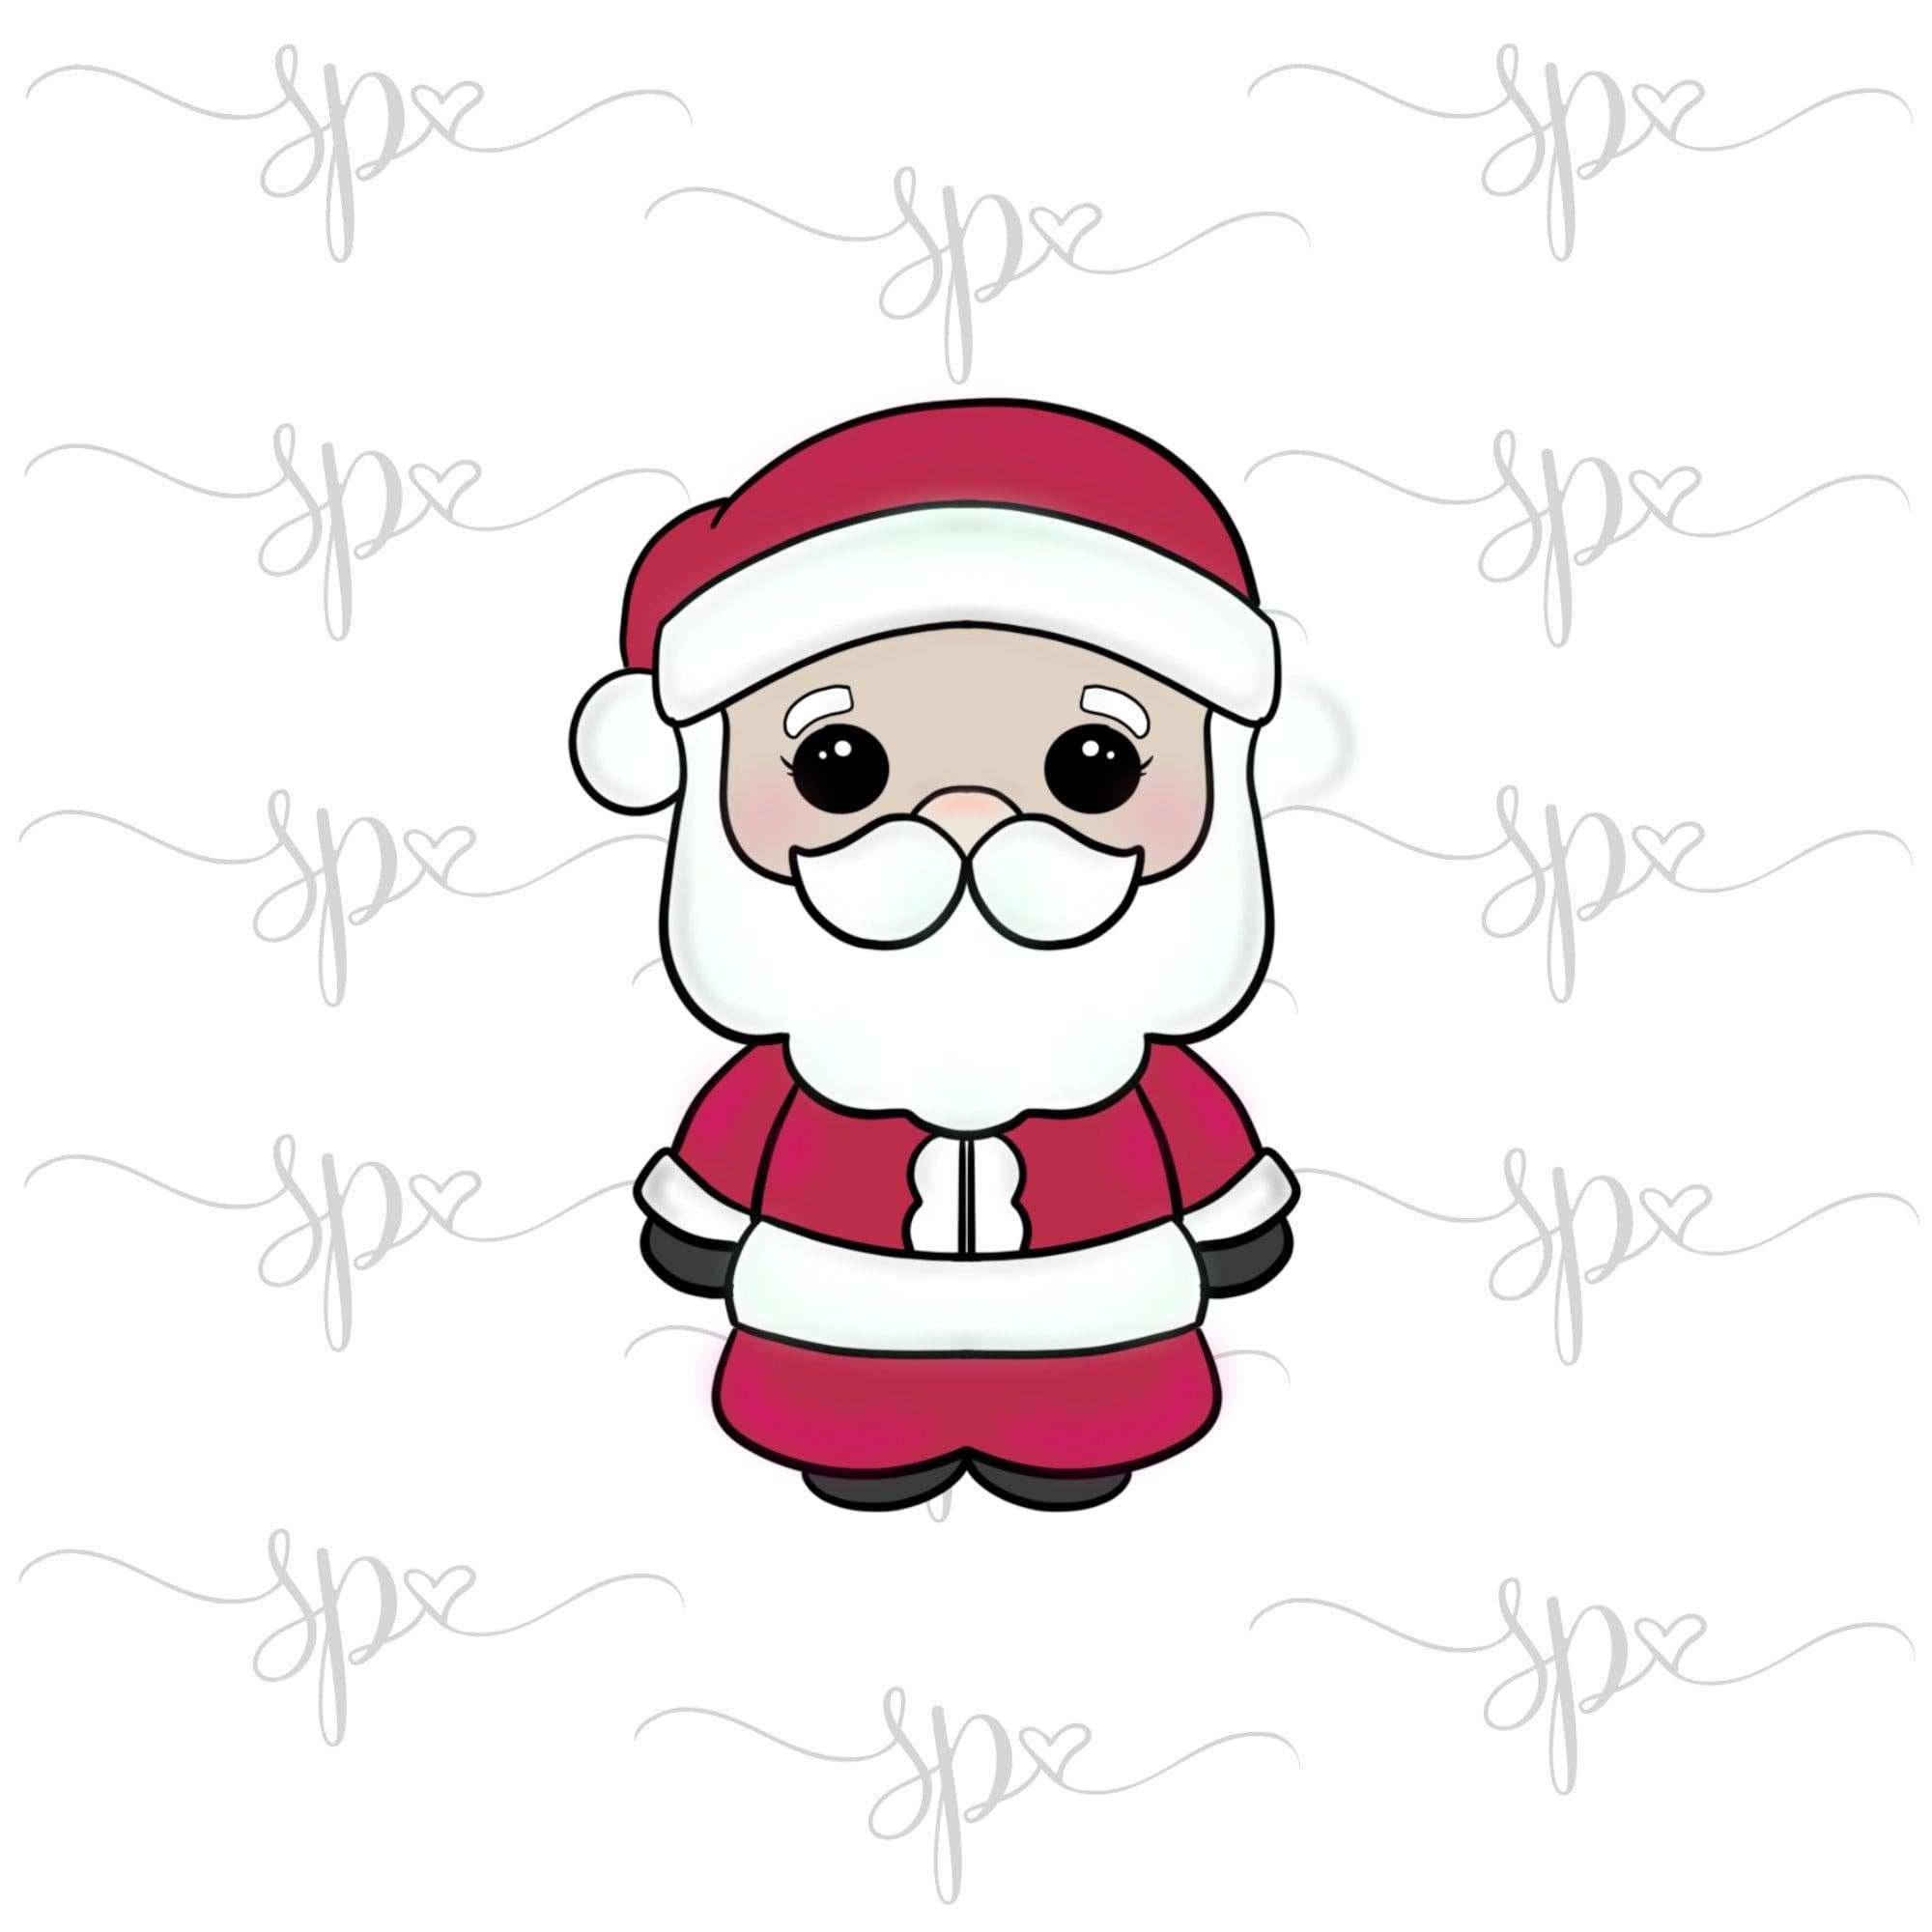 Santa 2019 Cookie Cutter - Sweetleigh 